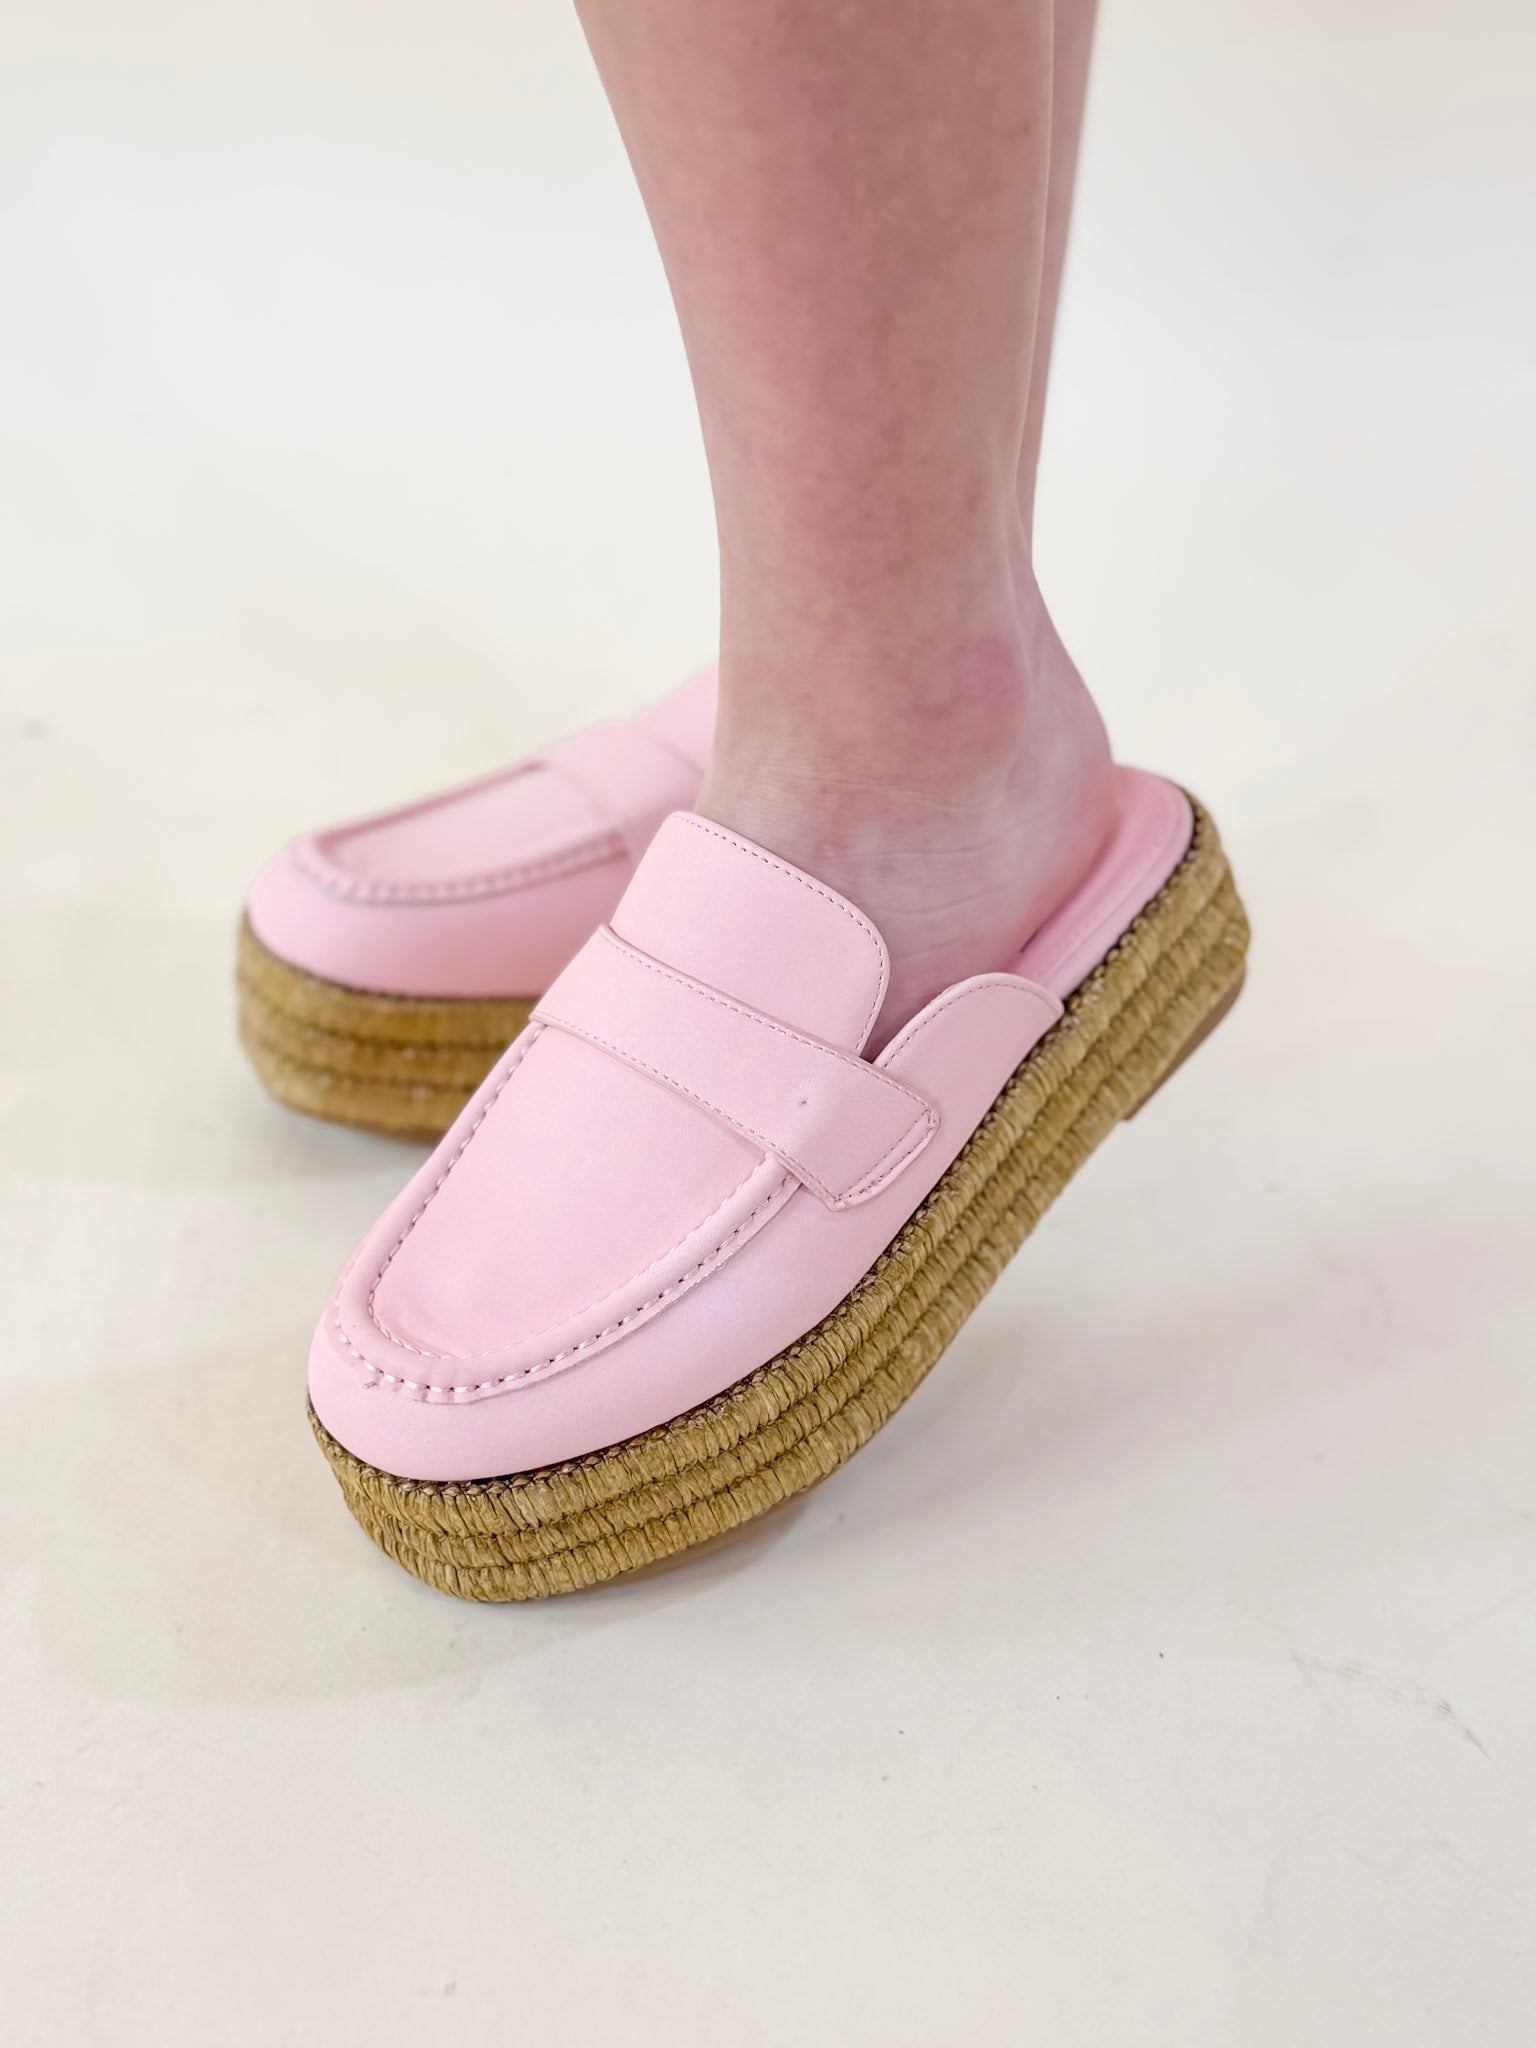 Matisse | Wren Platform Mule Loafer in Pink - Giddy Up Glamour Boutique